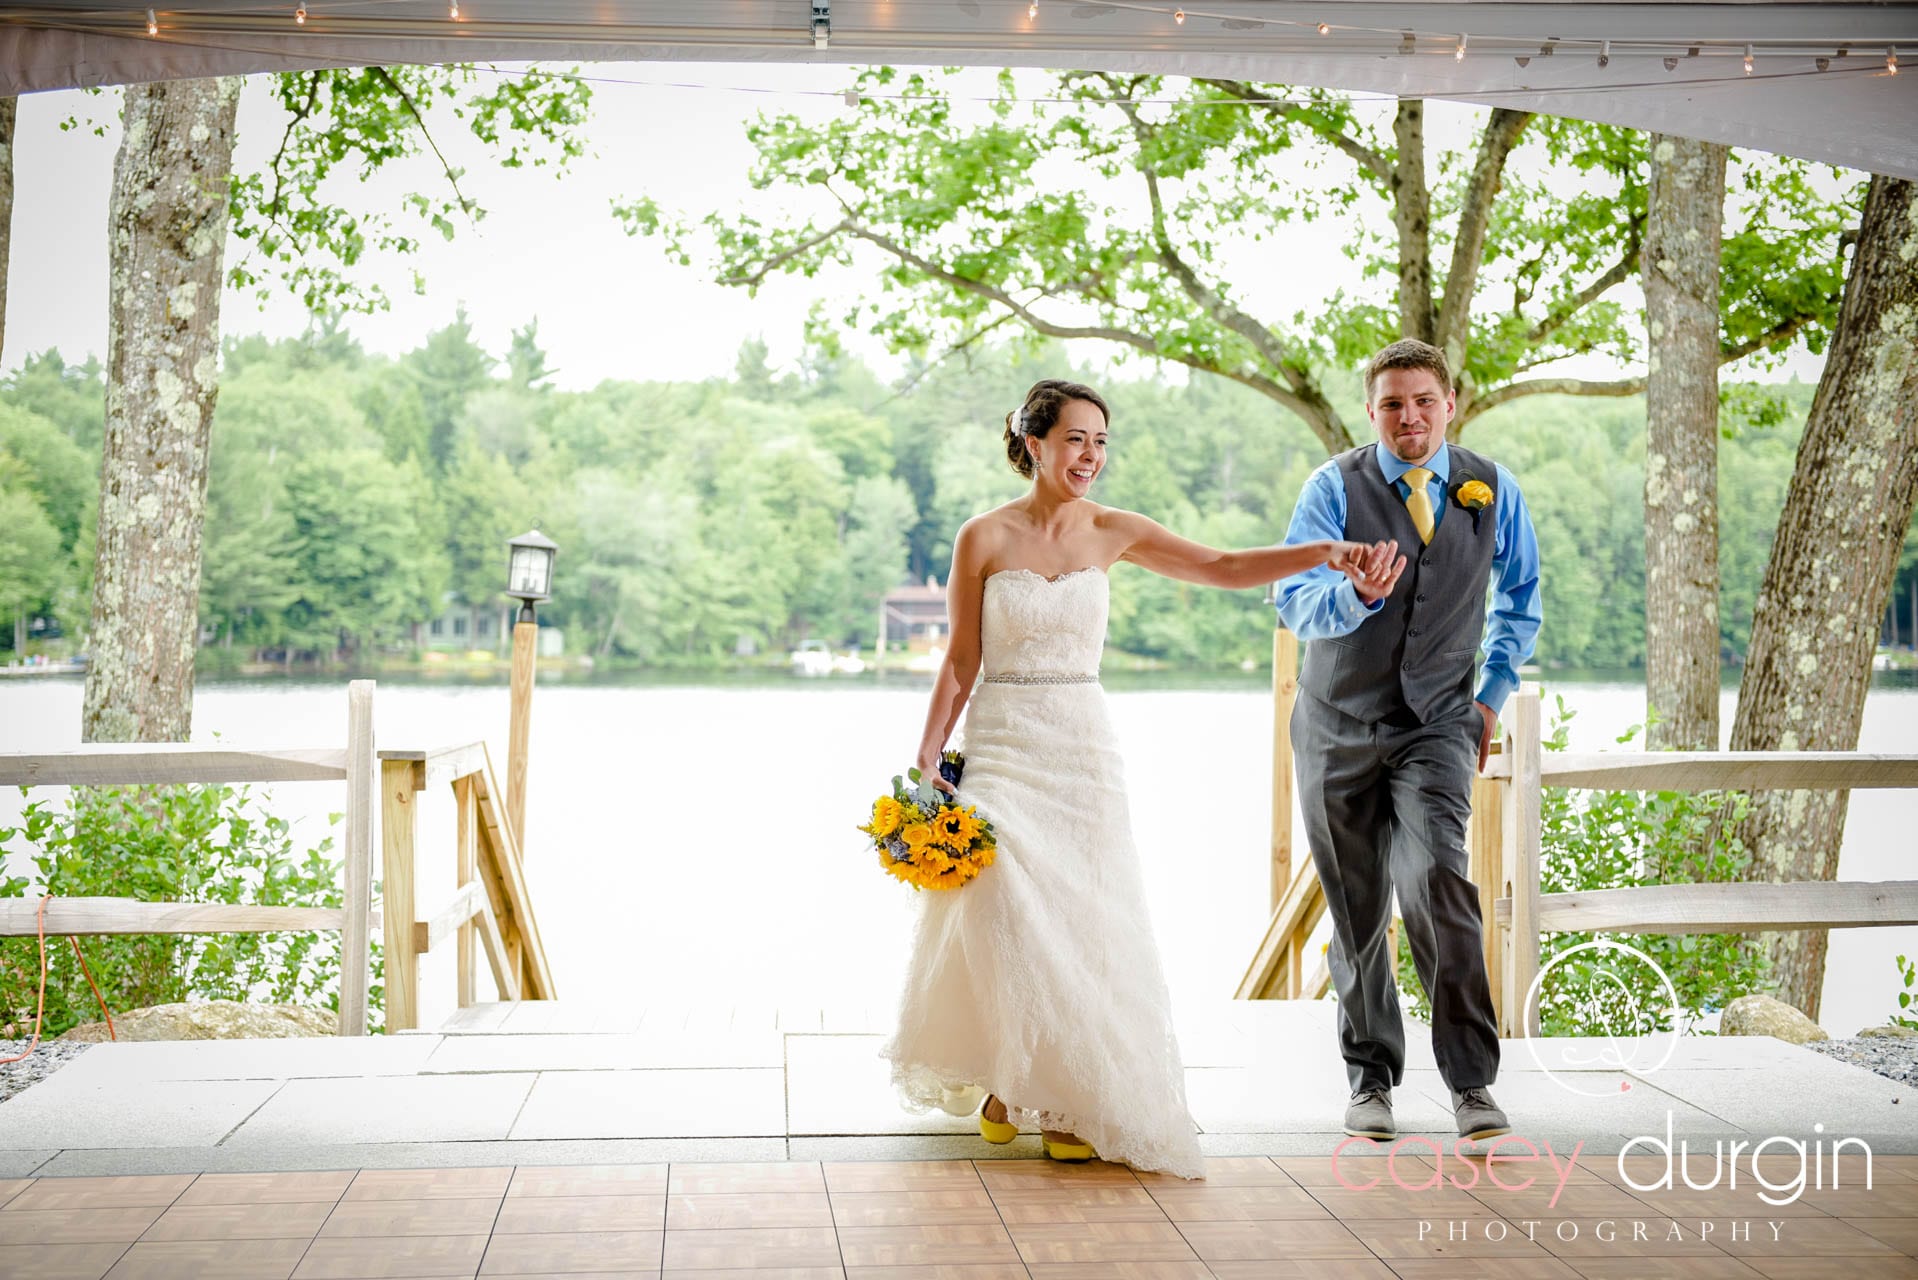 Weddings at Lake shore Village Resort